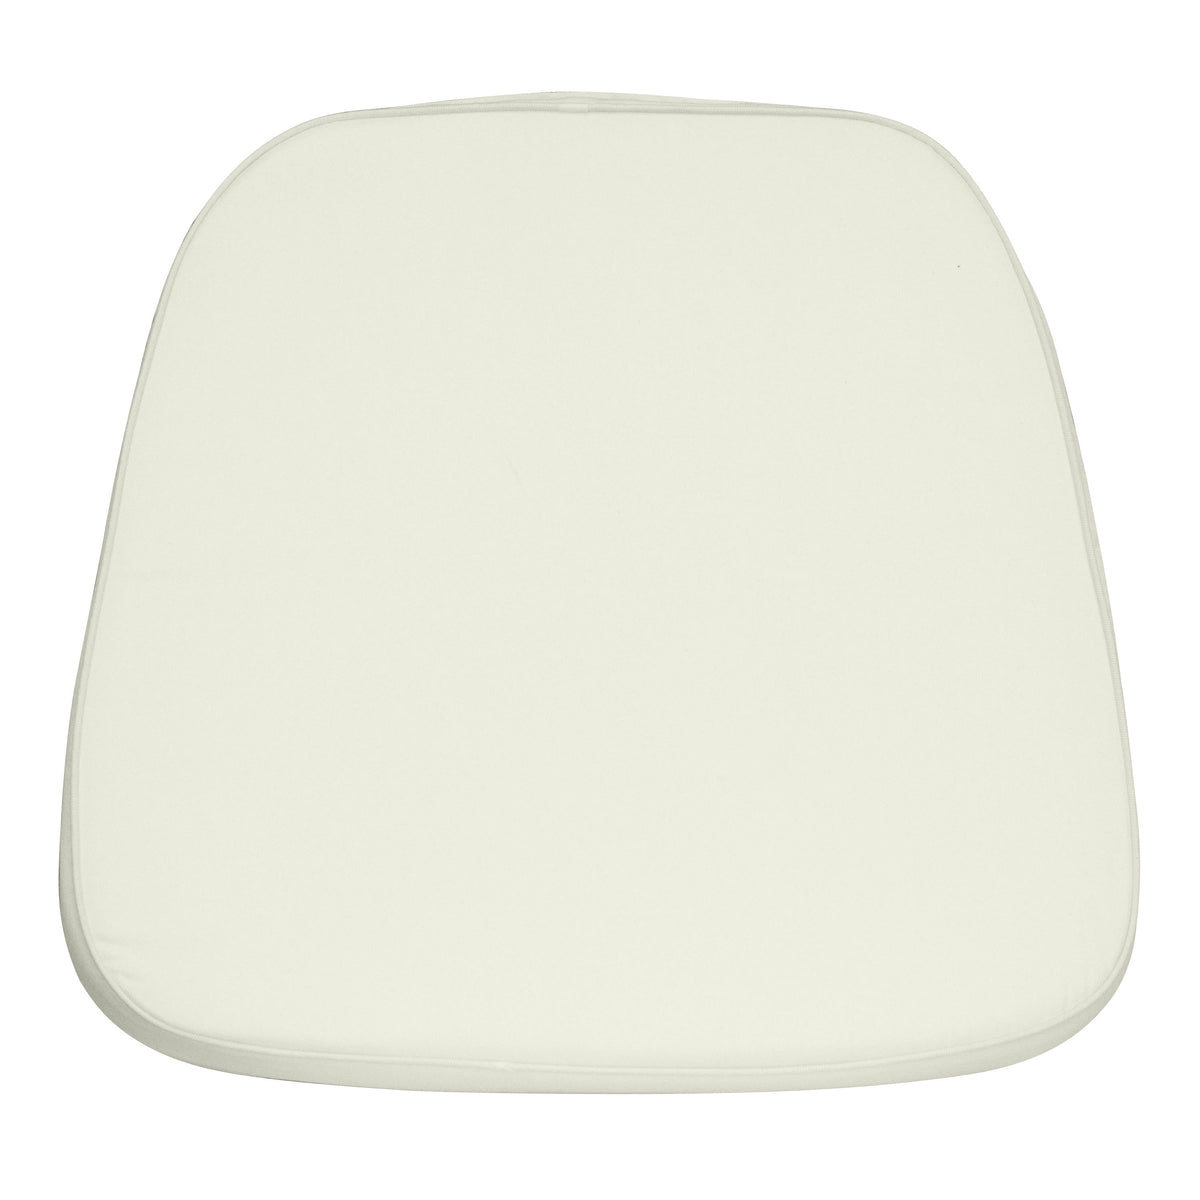 Ivory |#| Soft Dark Ivory Fabric Chiavari Chair Cushion - Chair Accessories